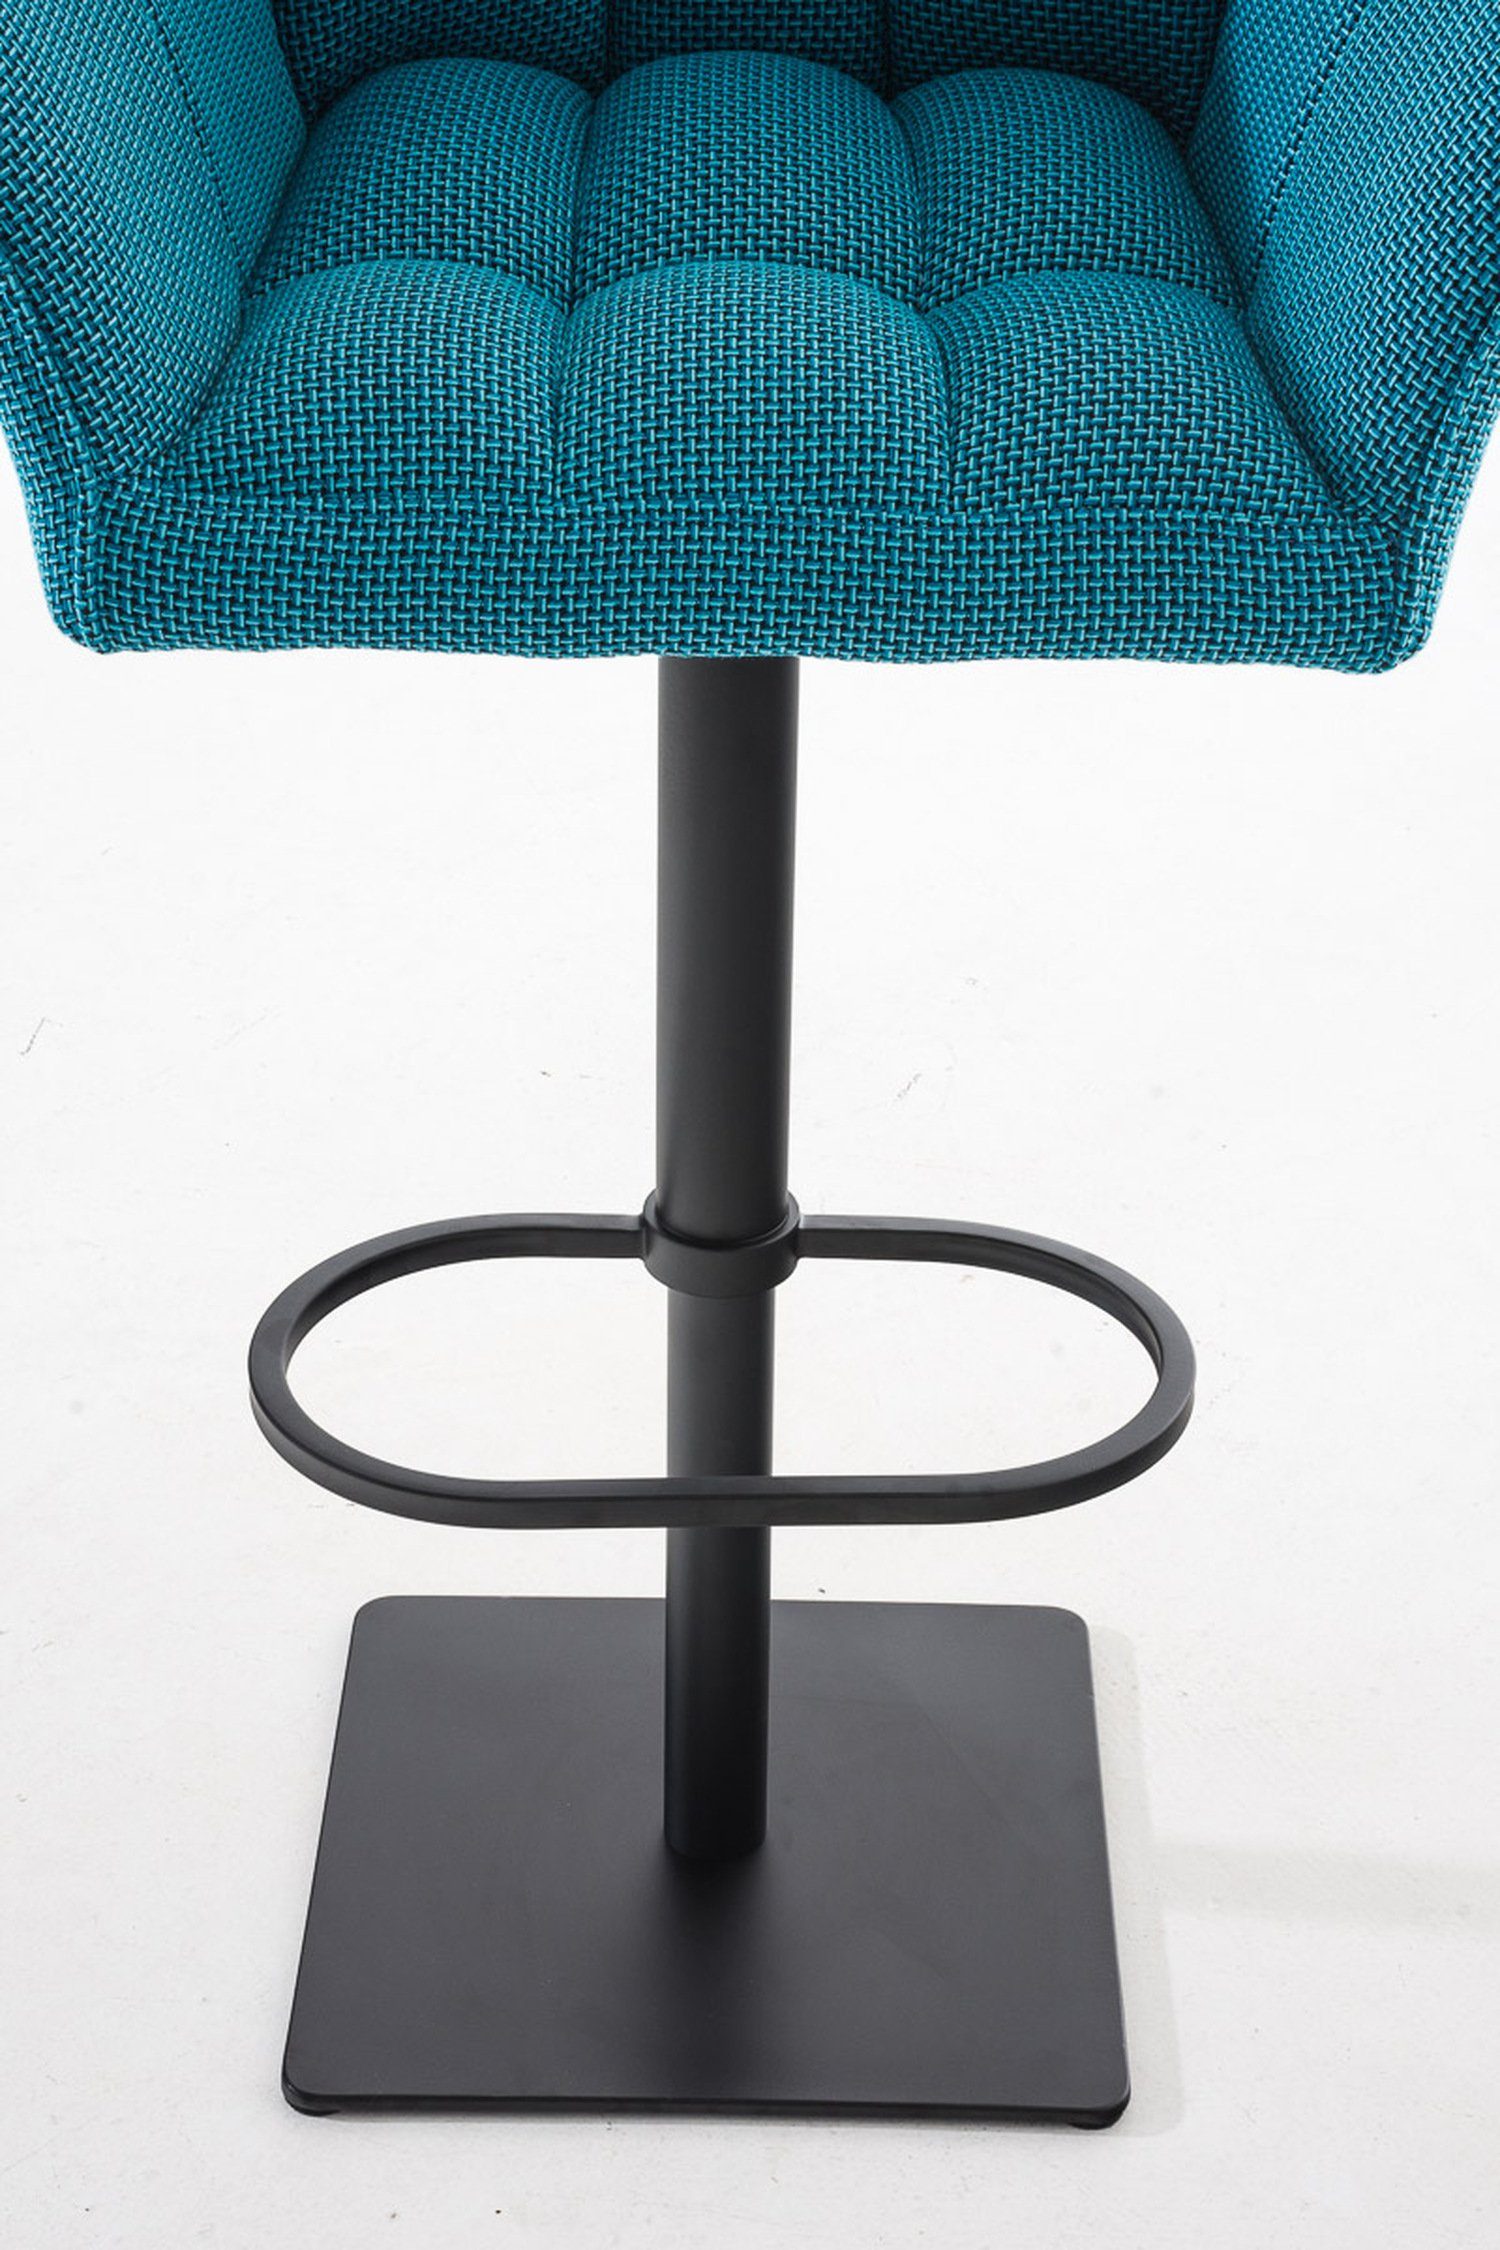 Barhocker - Metall Türkis Fußstütze 360° - & (mit für Damaso Sitzfläche: Küche), und matt Stoff Rückenlehne - TPFLiving schwarz Theke Hocker drehbar